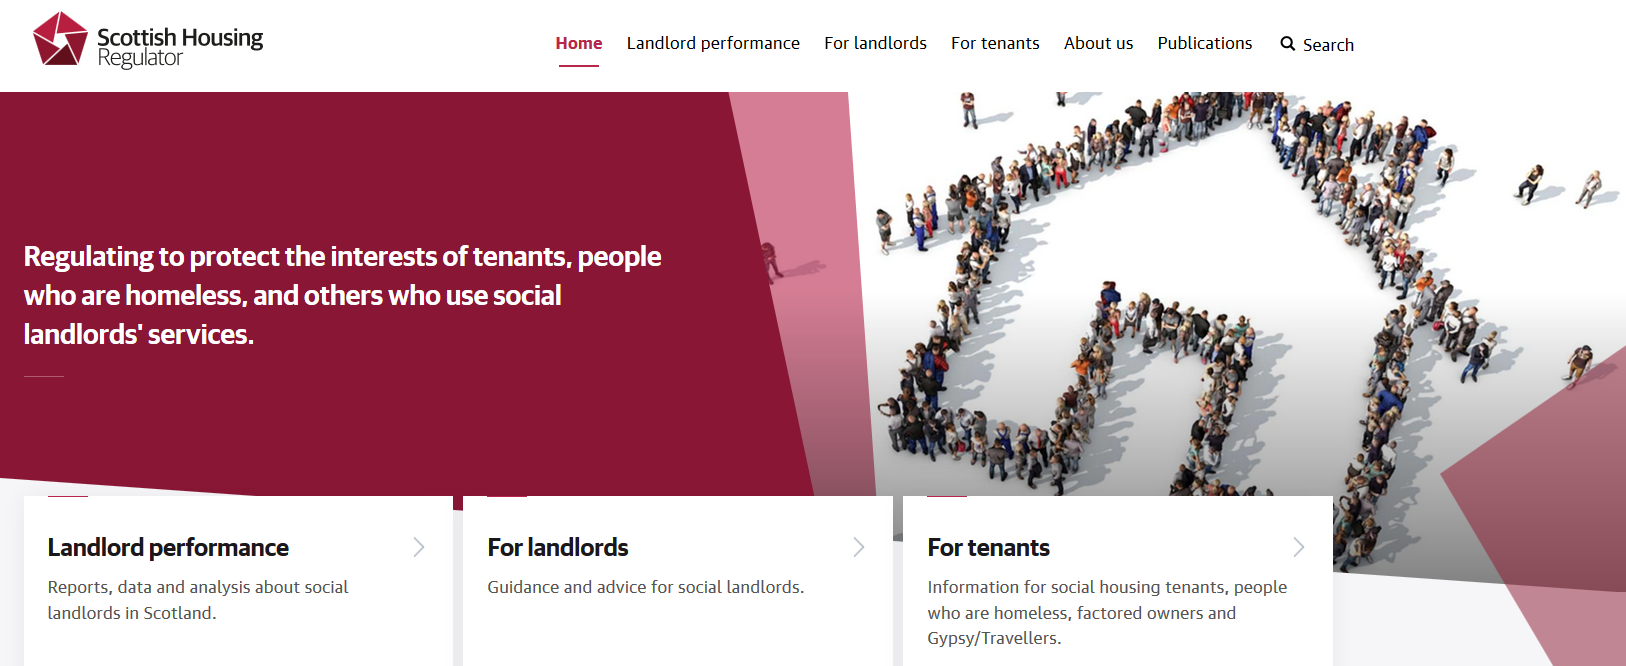 Scottish Housing Regulator launches new website